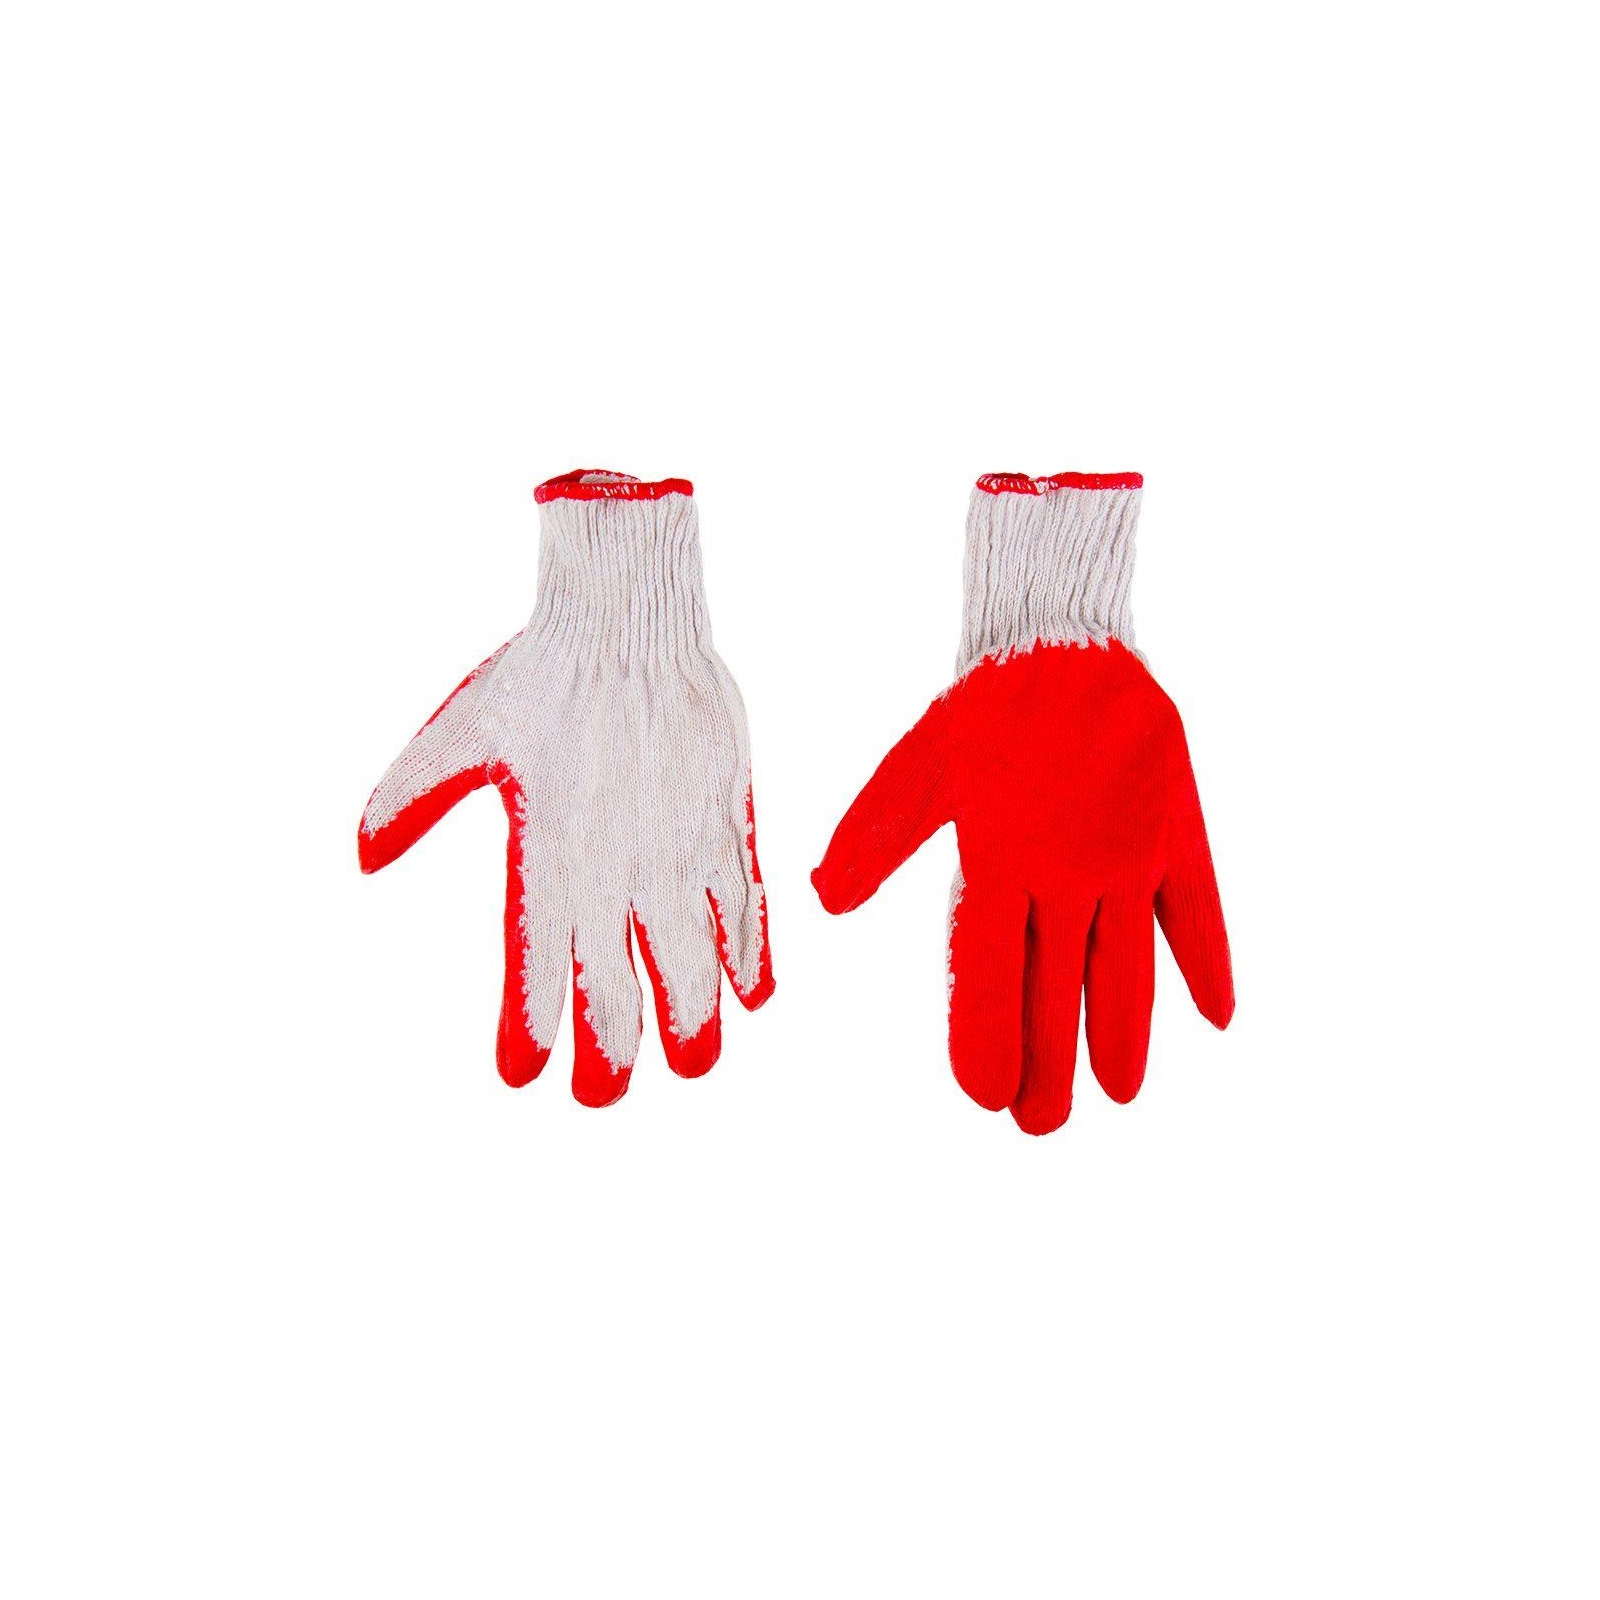 Захисні рукавиці Top Tools бавовна, гумове покриття, червоні, р.9 (83S203)